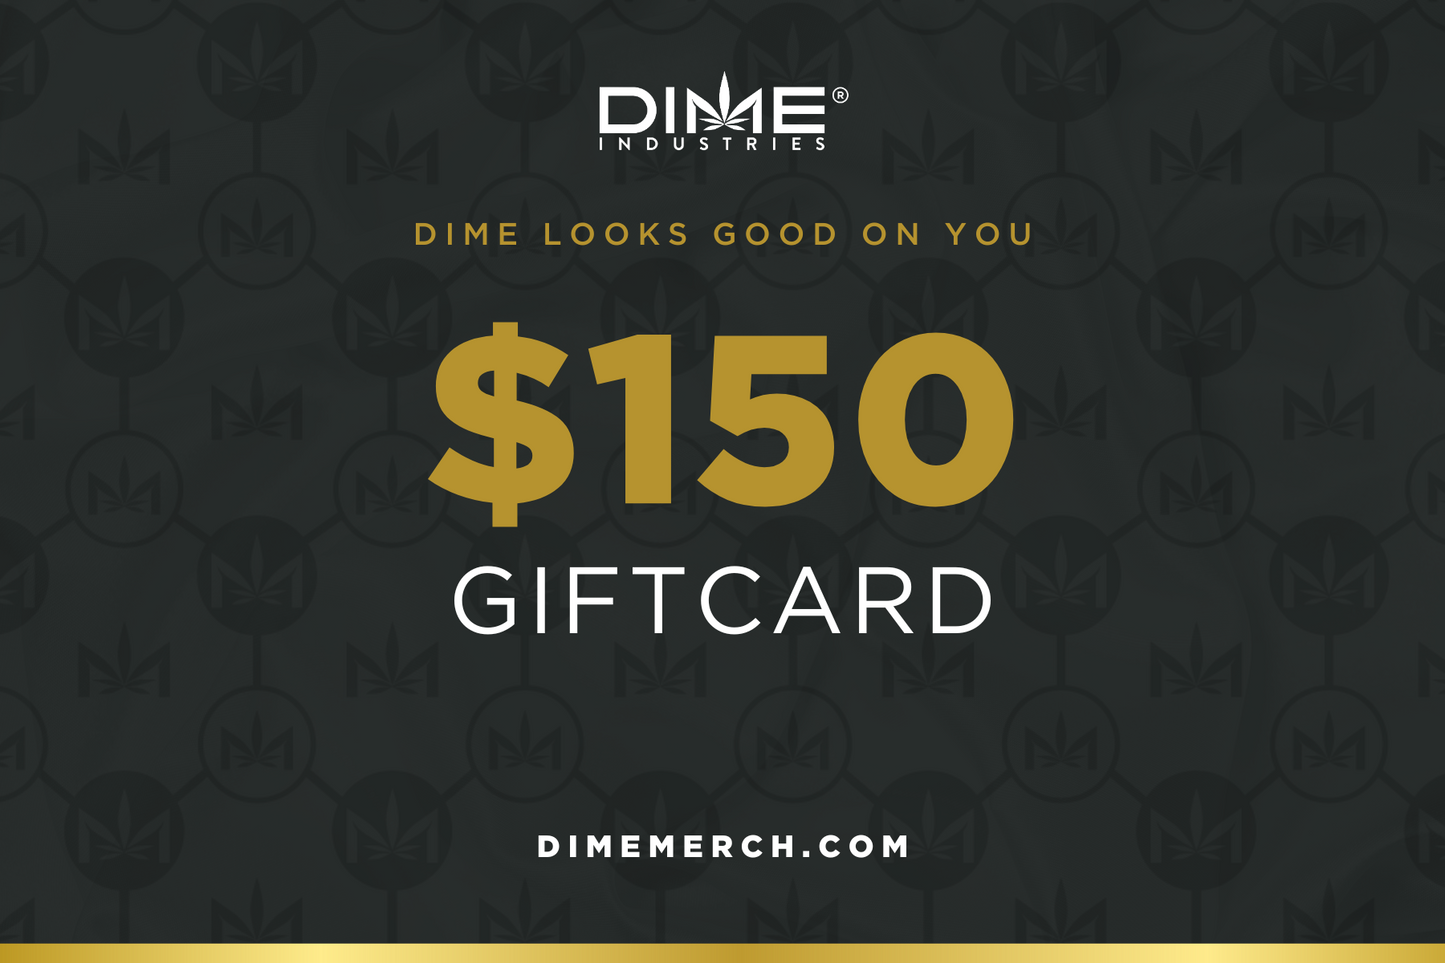 $200 DIME MERCH GIFT CARD